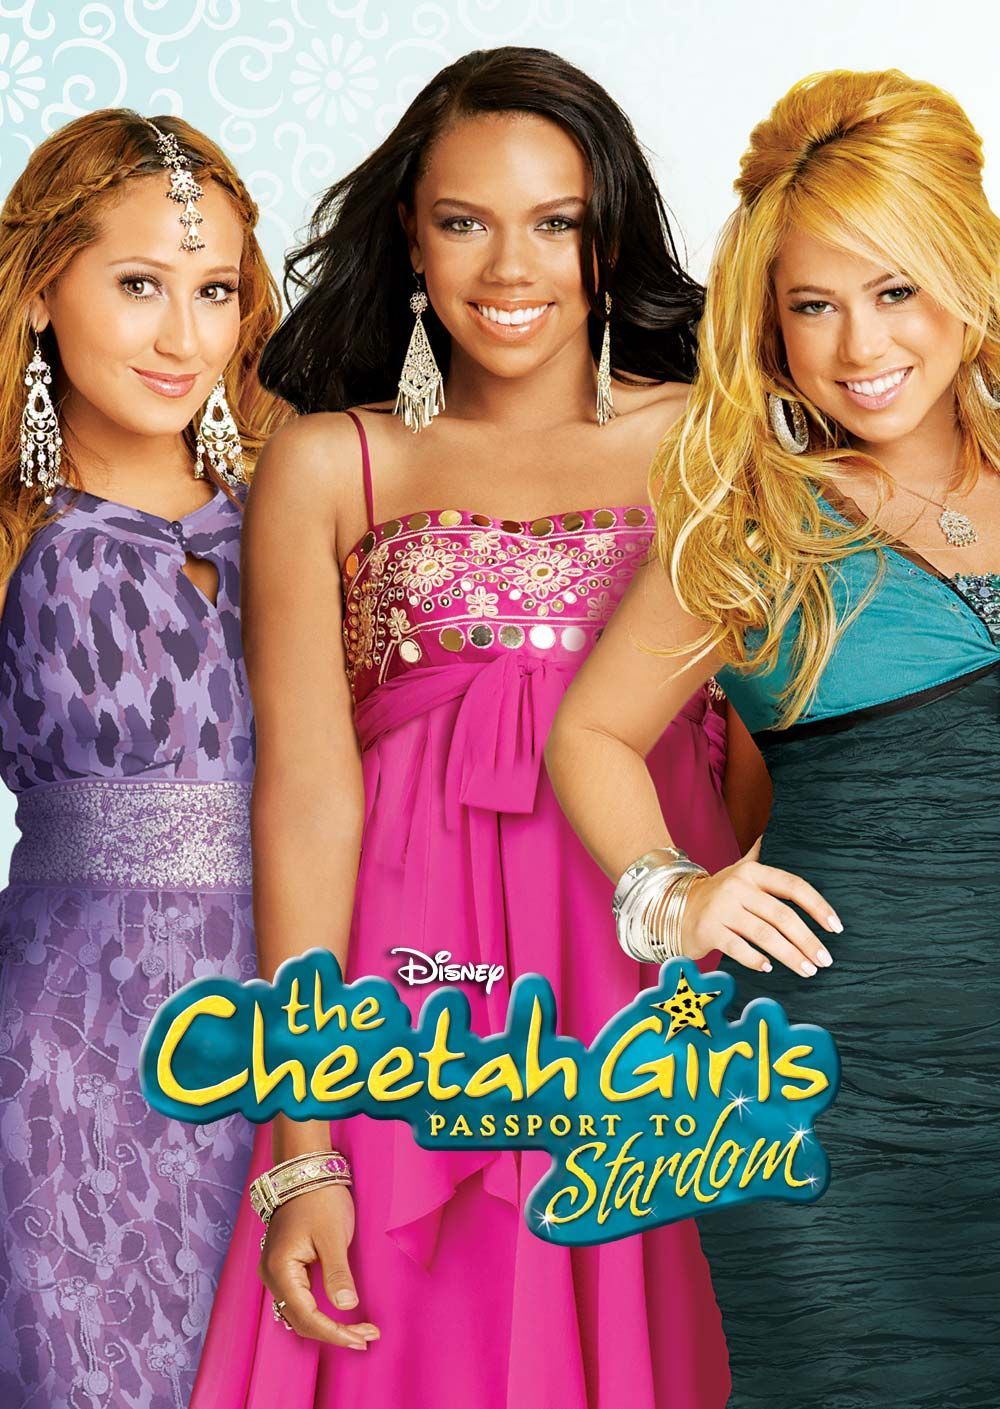 The Cheetah Girls: Passport To Stardom. Cheetah girls outfits, The cheetah girls, Cheeta girls